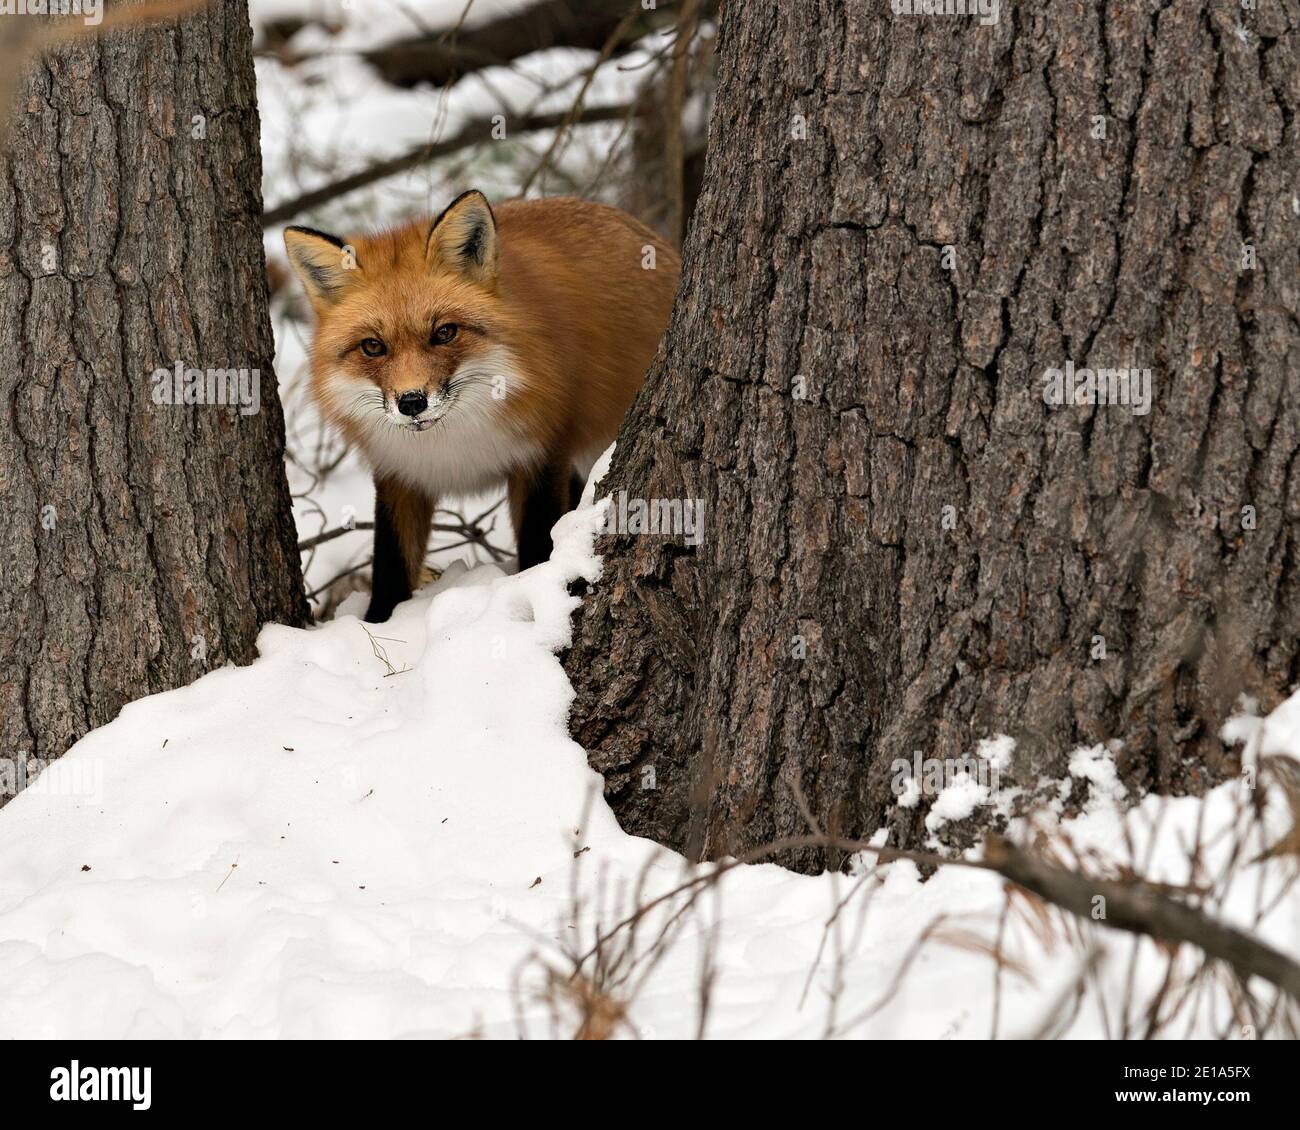 Vista del profilo in primo piano della volpe rossa nella stagione invernale nel suo habitat con lo sfondo della neve che mostra la pelliccia di volpe. Immagine FOX. Immagine. Verticale. Foto Stock